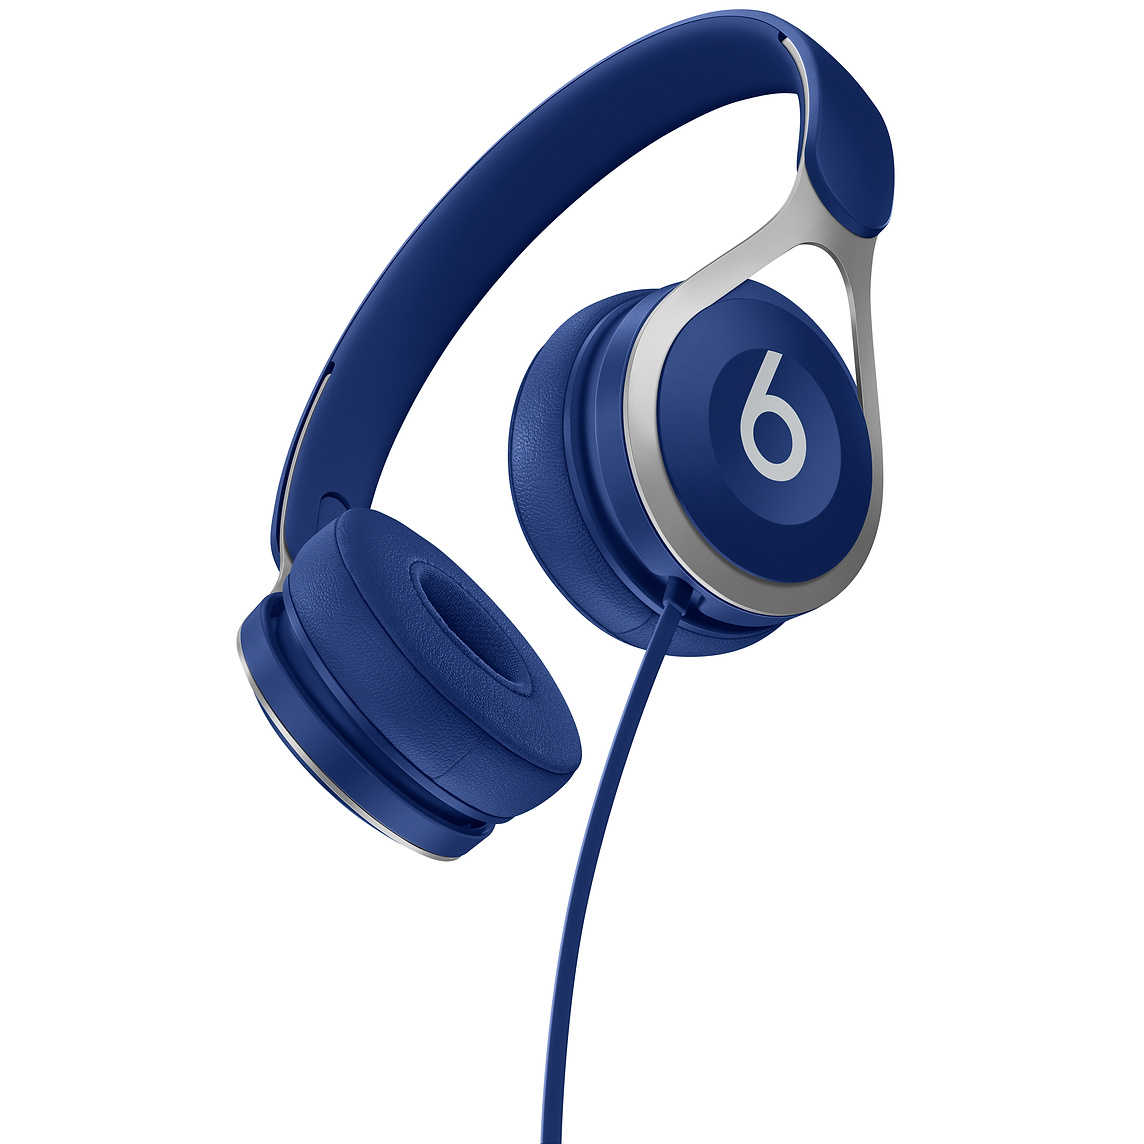 【Beats】EP 藍 耳罩式耳機 含線控可通話 ★ 免運 ★ 送收納袋